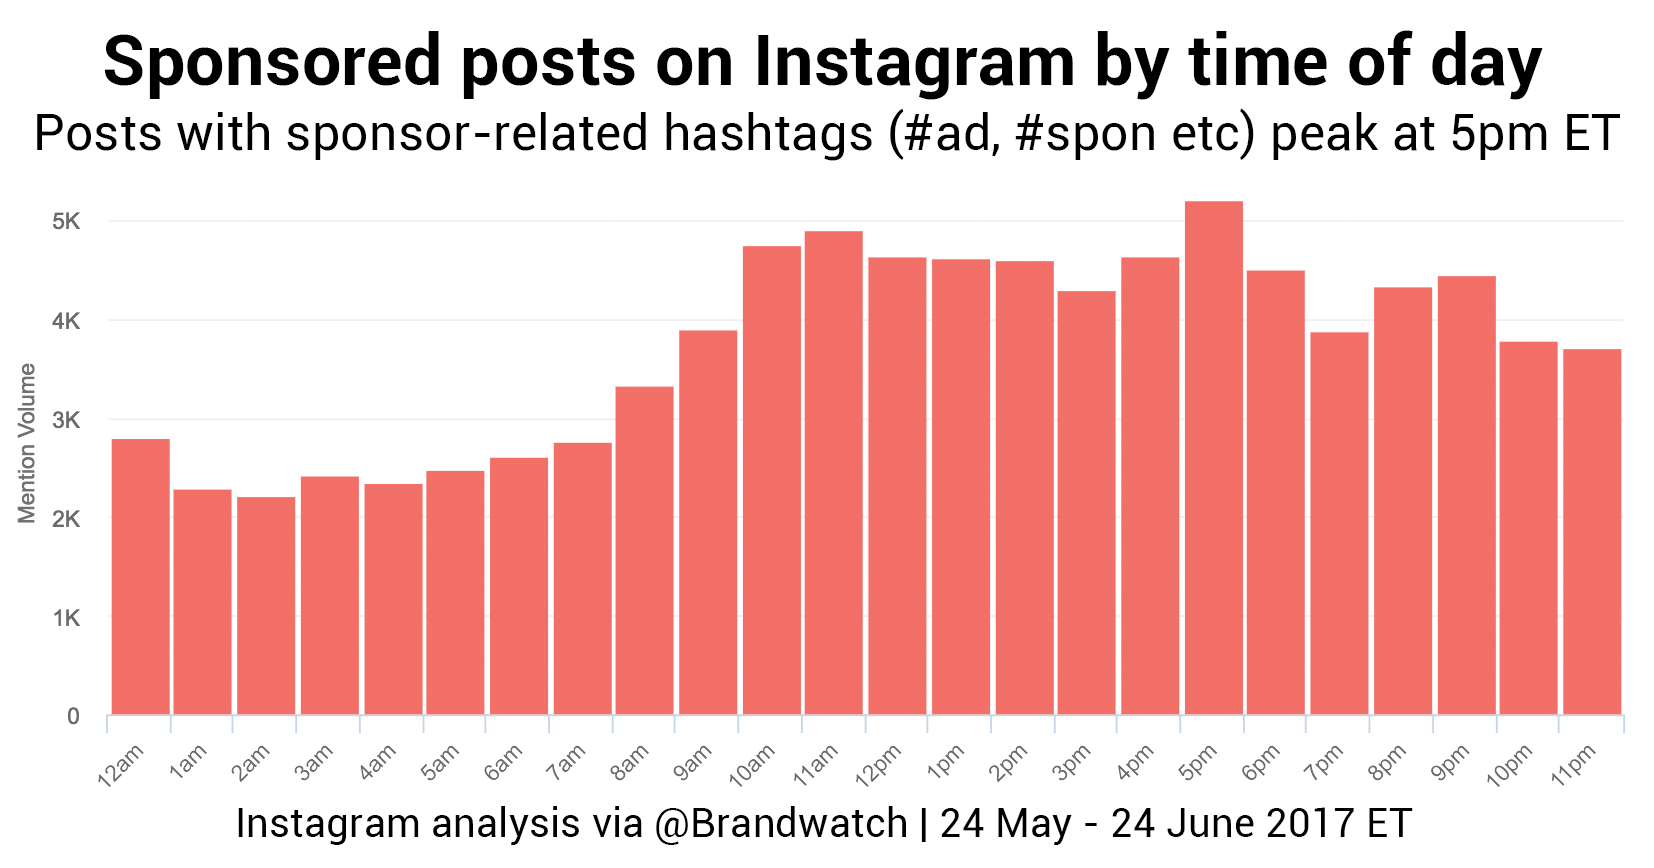 Anuncios en Instagram - por hora del día